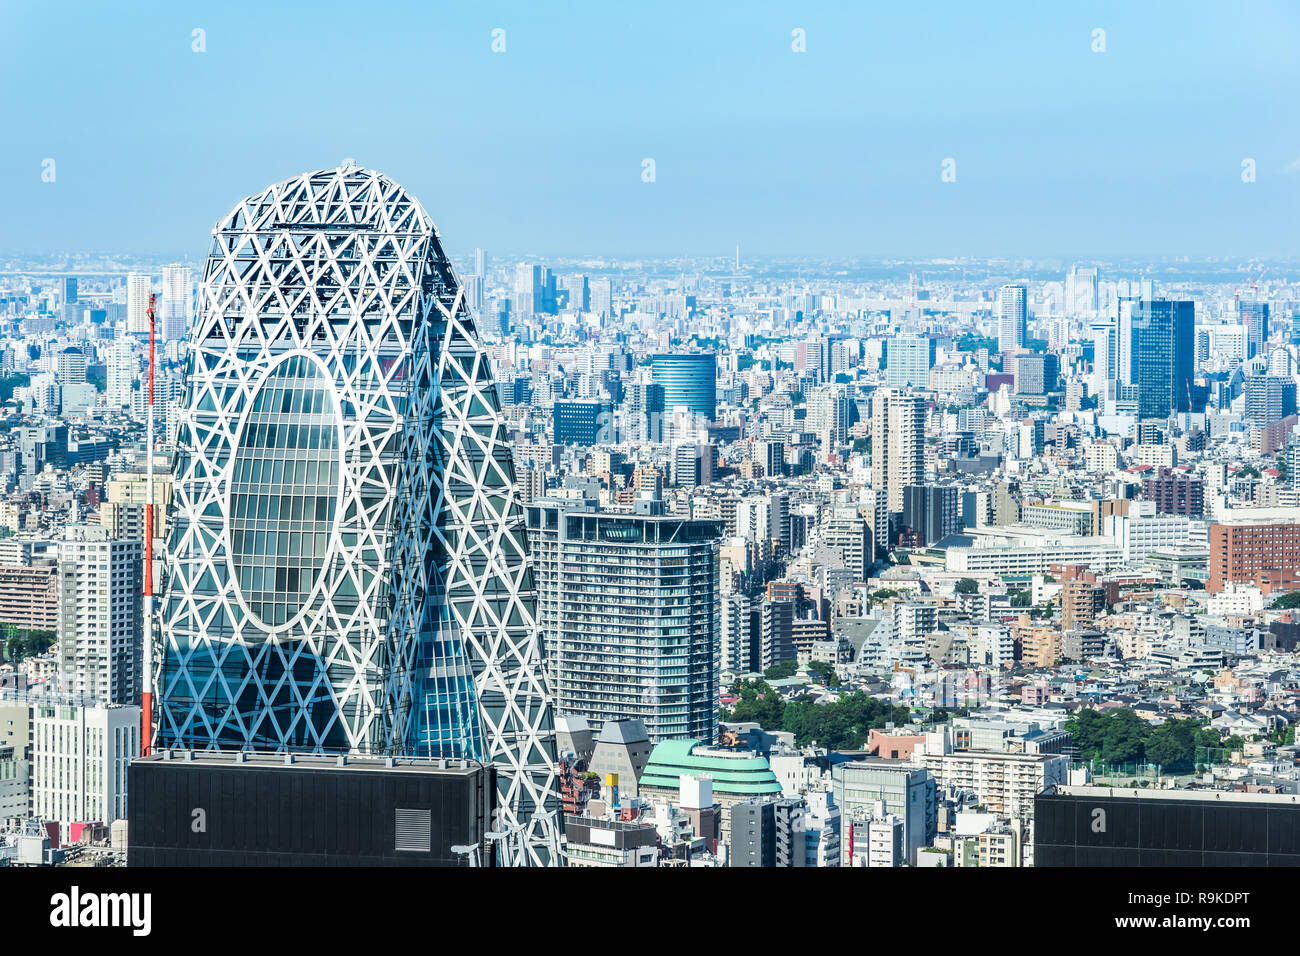 Asien Business Konzept für Immobilien und Corporate Bau - Panoramablick auf die moderne Skyline der Stadt Luftaufnahme der Shinjuku-gegend unter strahlend blauen Himmel ein Stockfoto